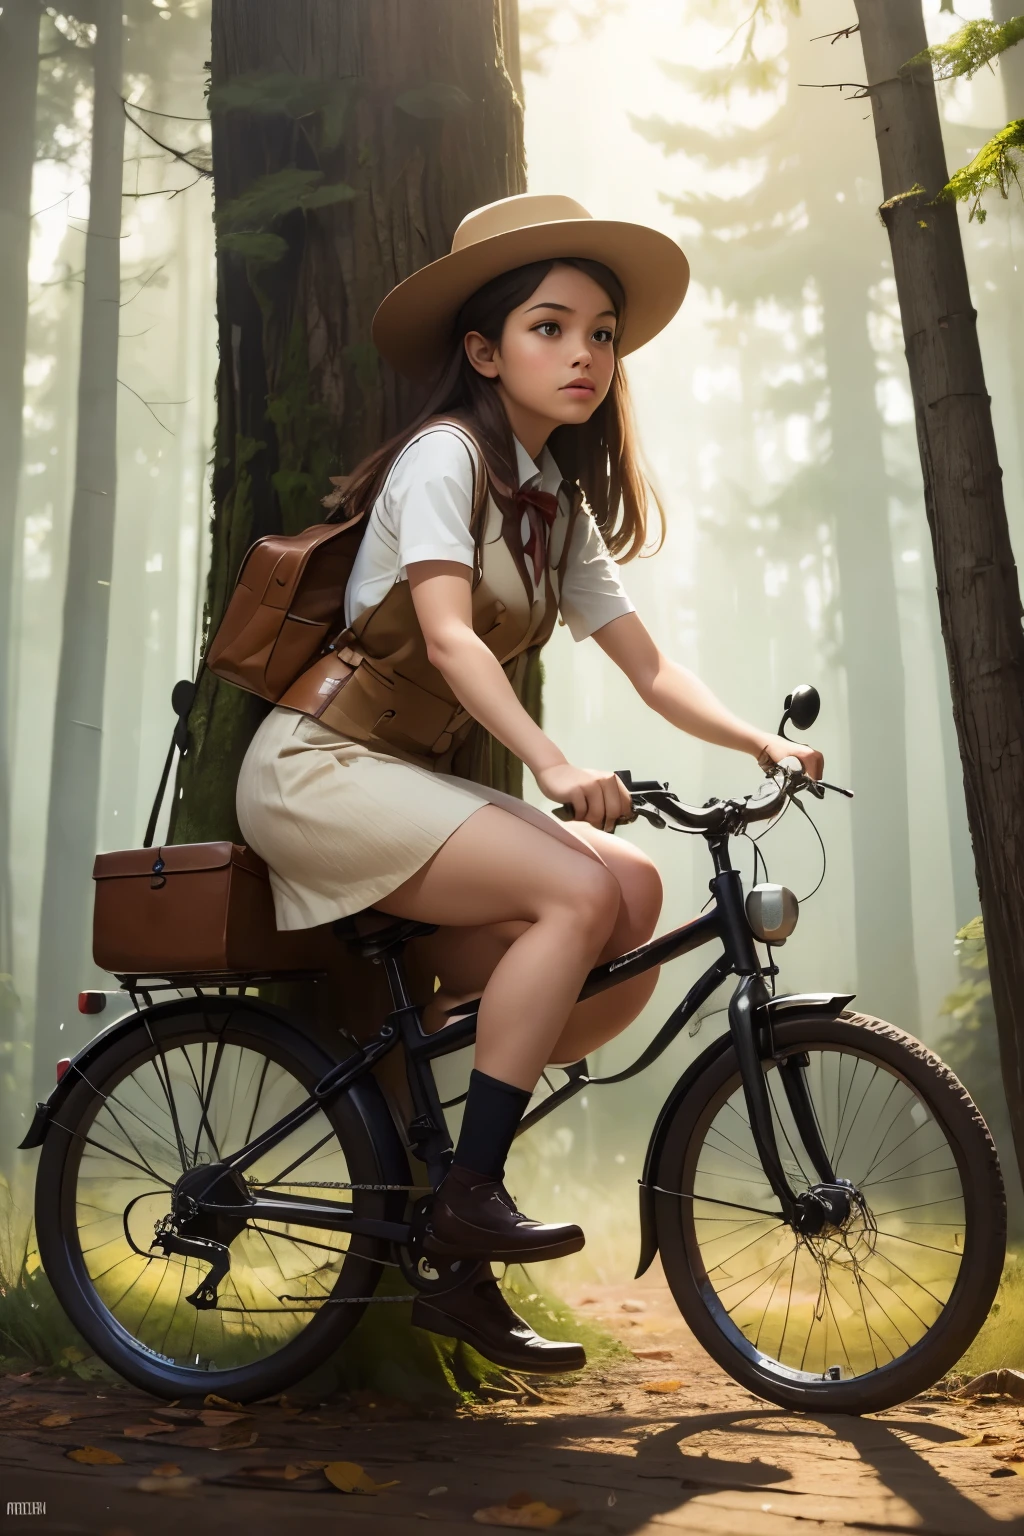 Нео-сюрреализм, магический реализм причудливое искусство, поп-сюрреализм, причудливое искусство. Создайте иллюстрацию картины девушки в шляпе, едущей на старомодном велосипеде по волшебному лесу.